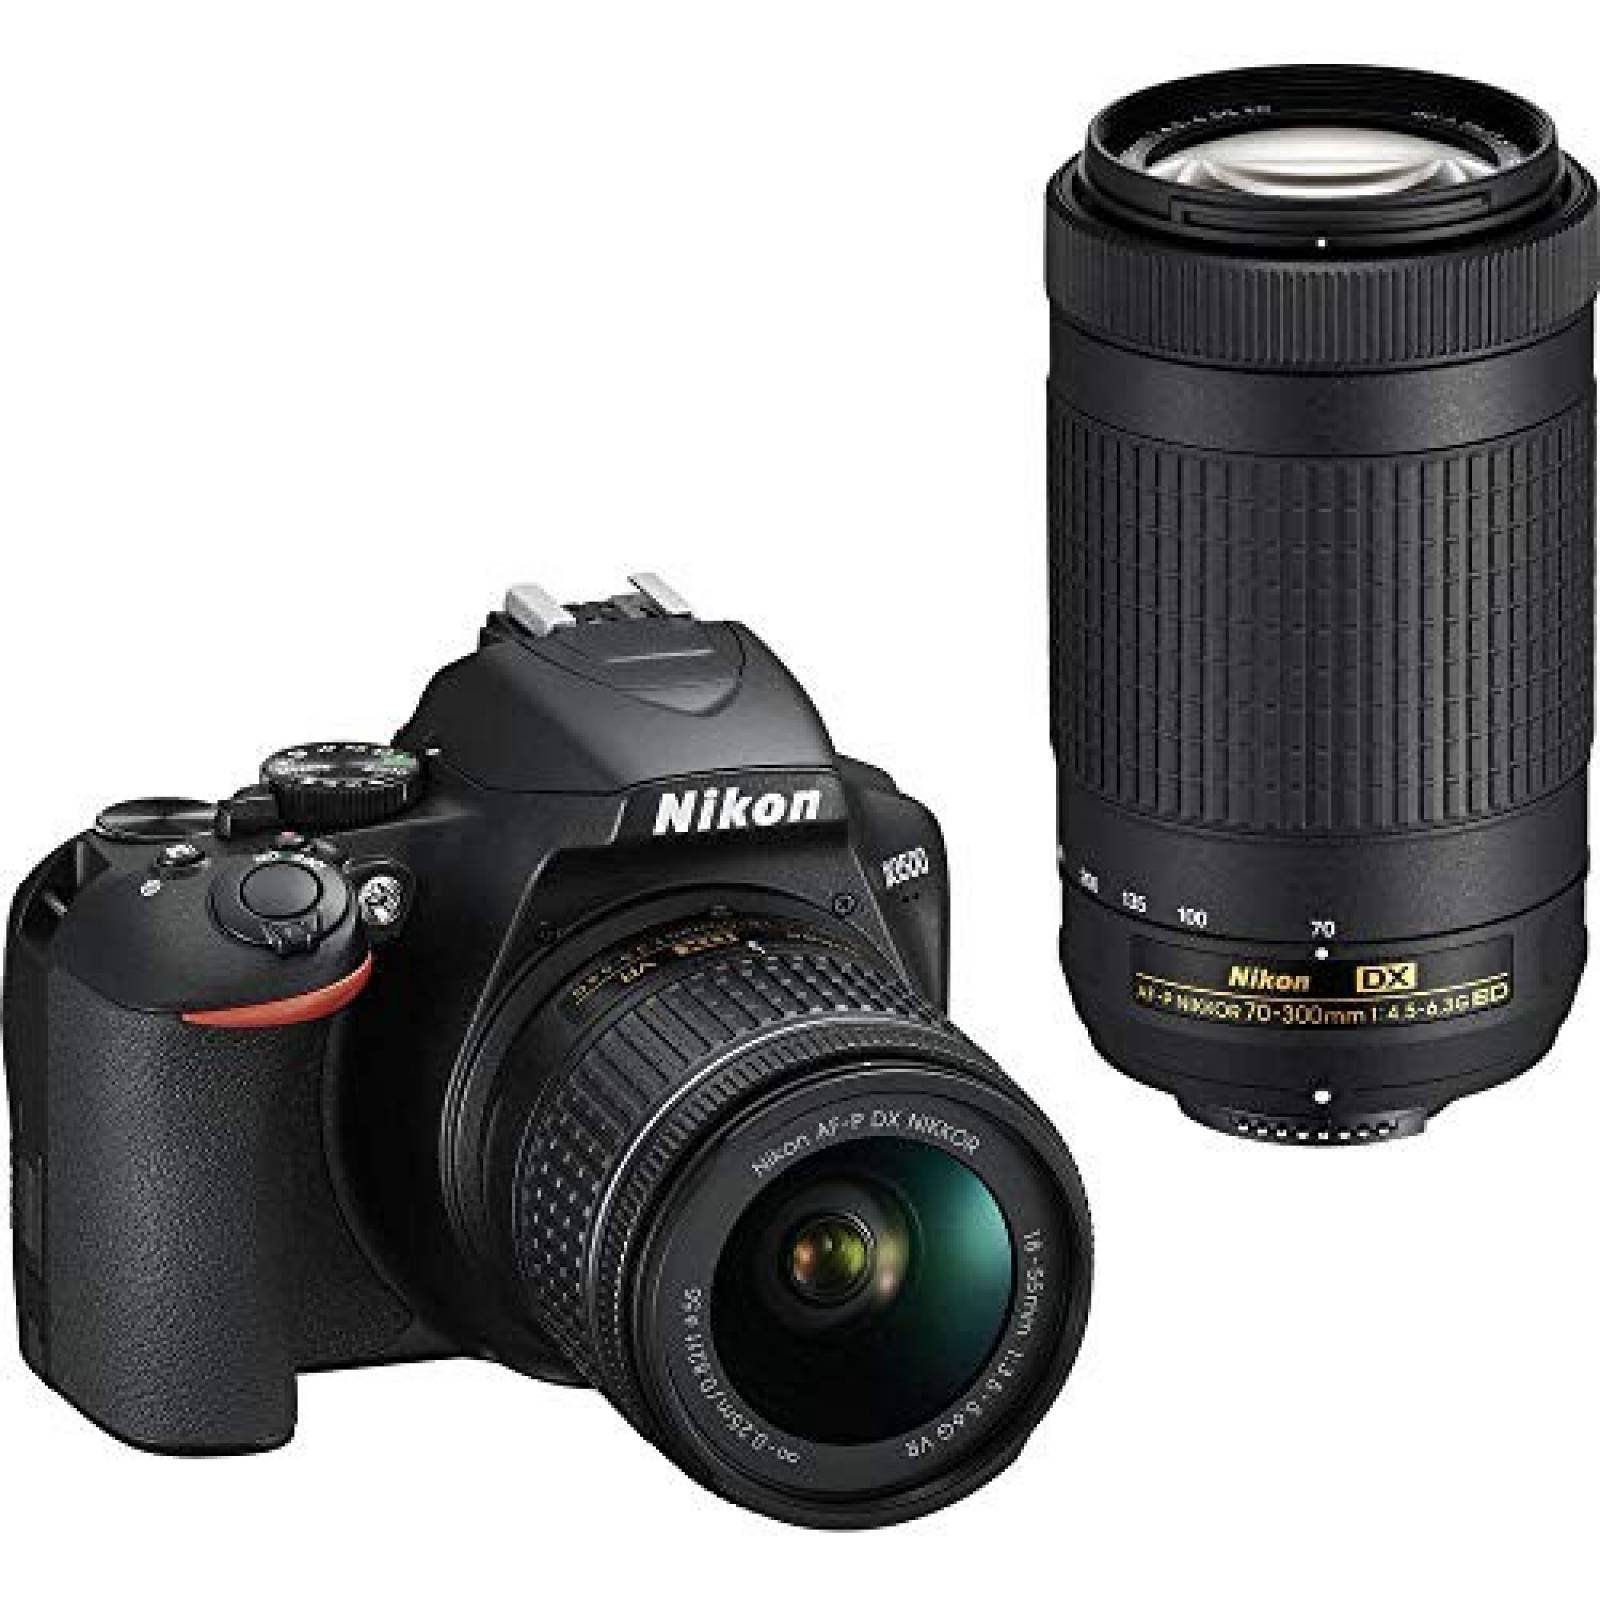 Base cámara DSLR Nikon w/18-55mm & 70-300mm Hard Kit -Negro